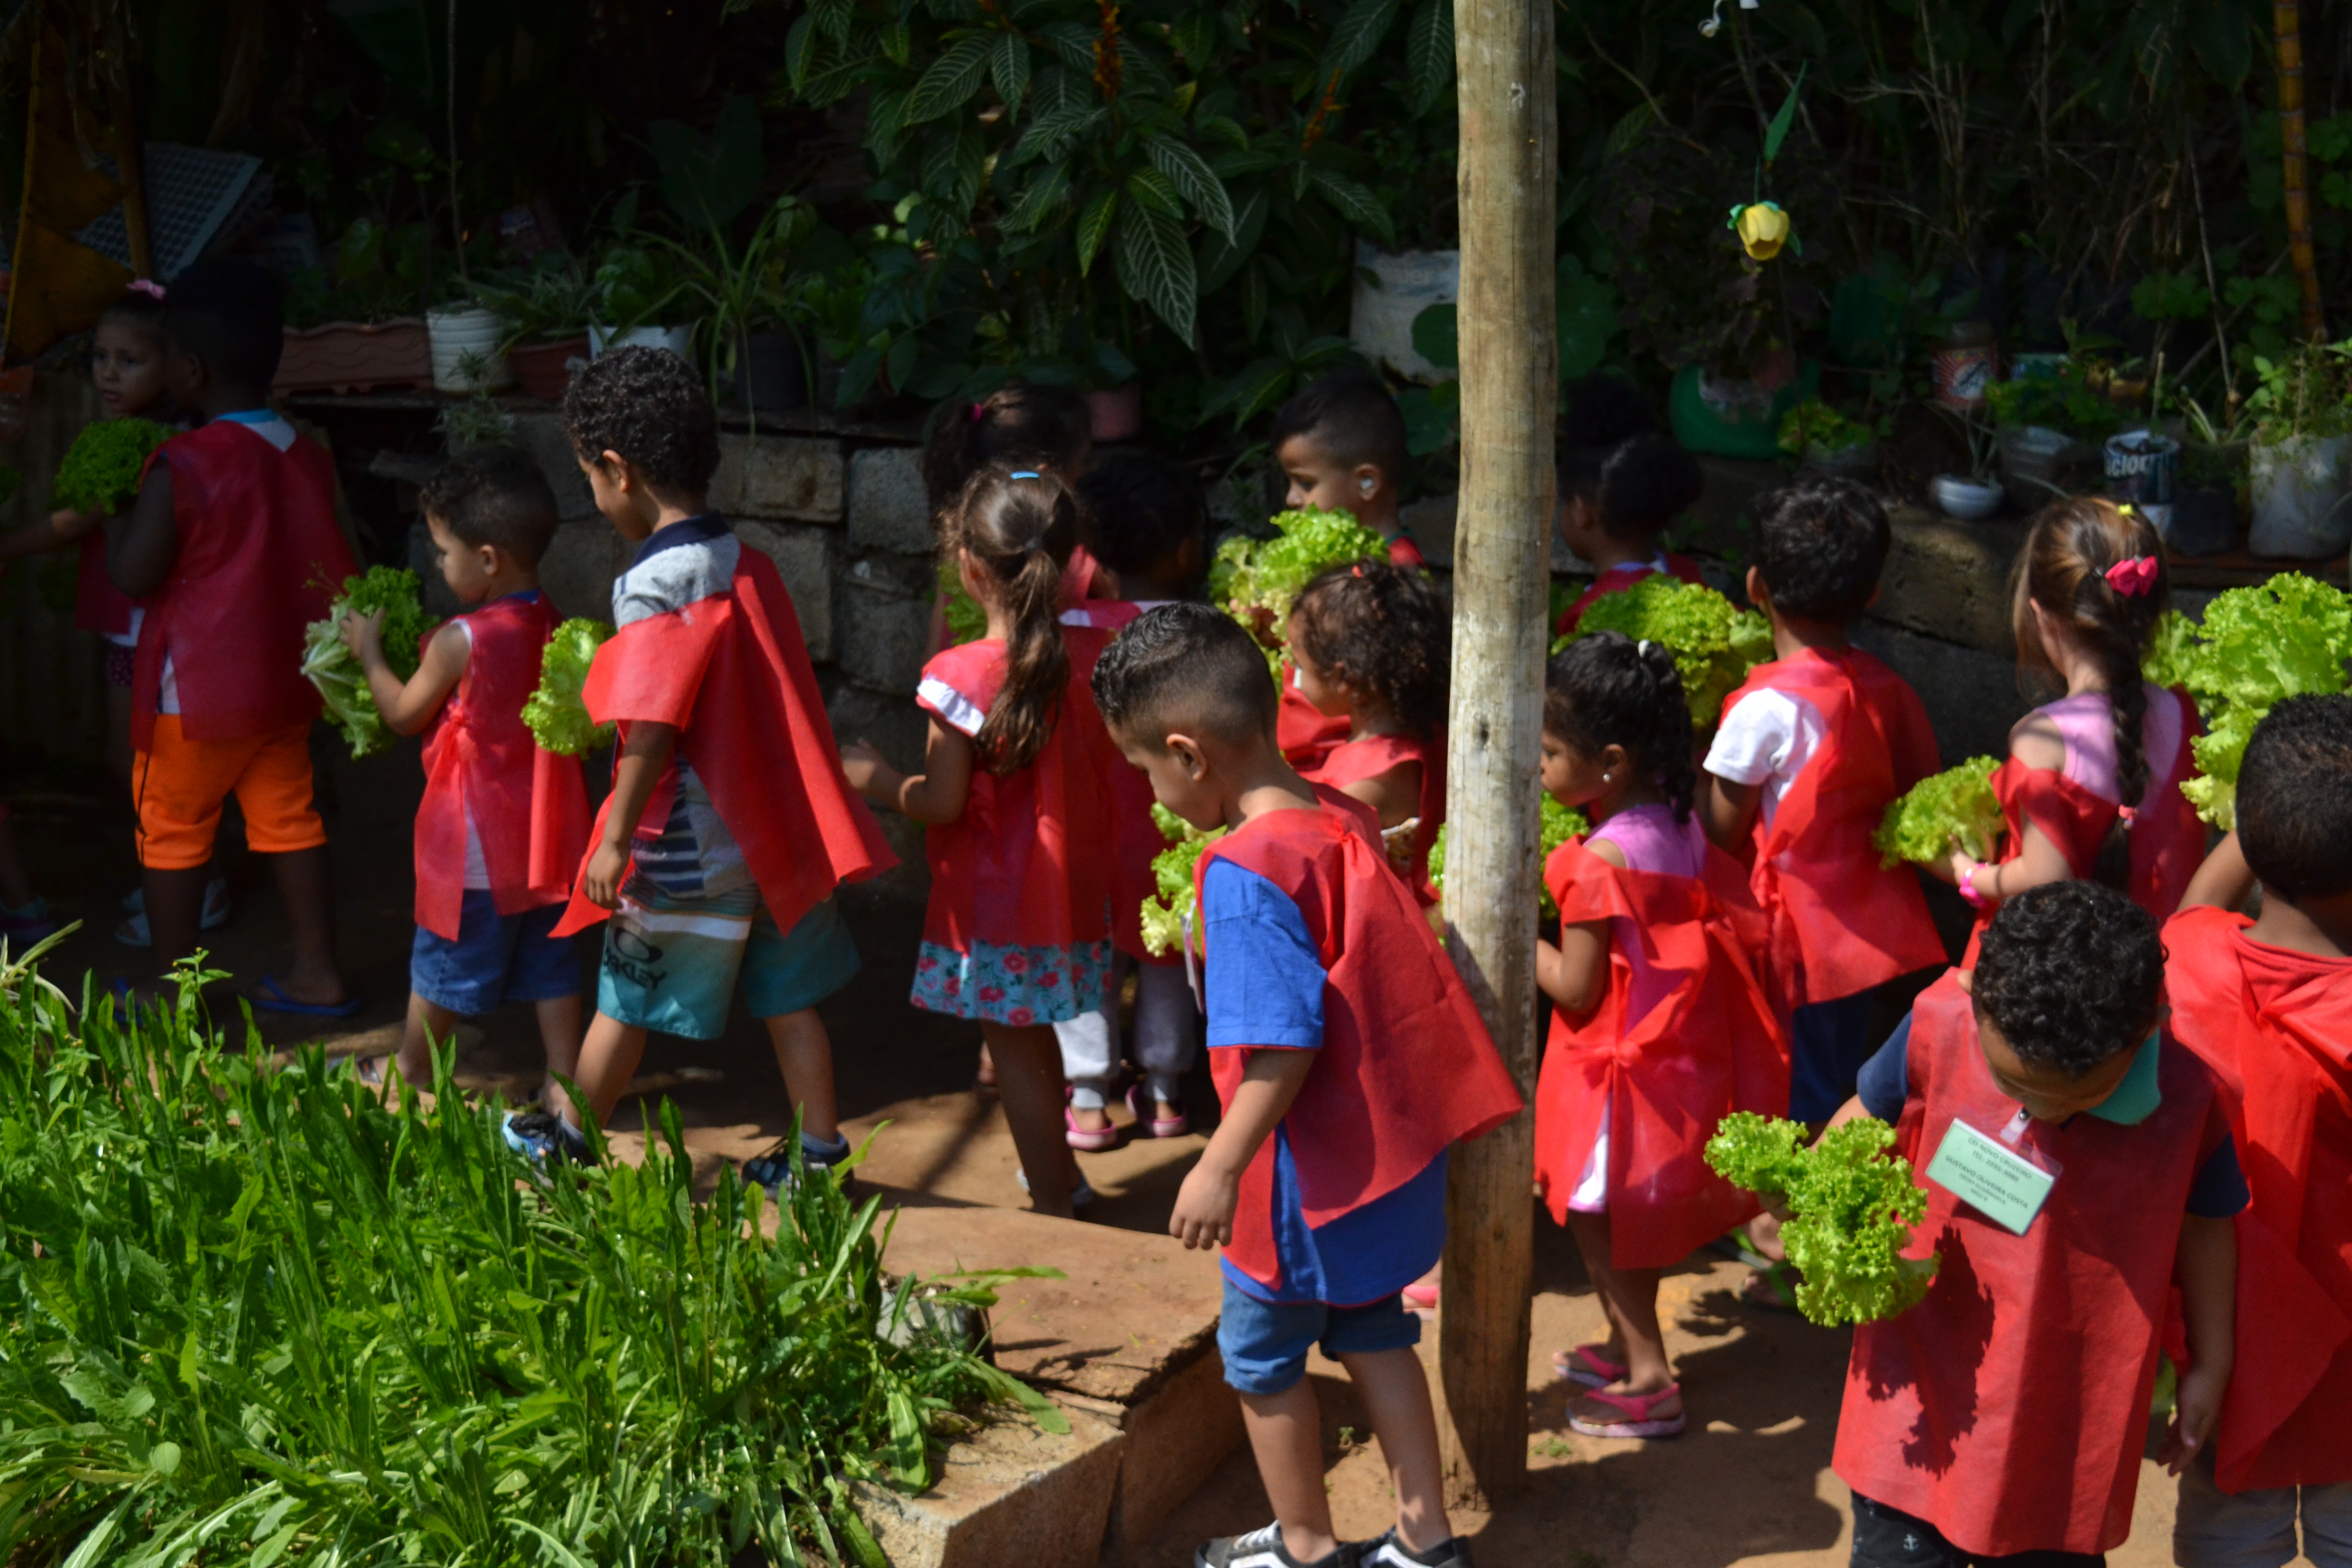 Foto da horta da Subprefeitura Itaim Paulista com crianças com jaleco vermelho enfileiradas segurando alfaces.